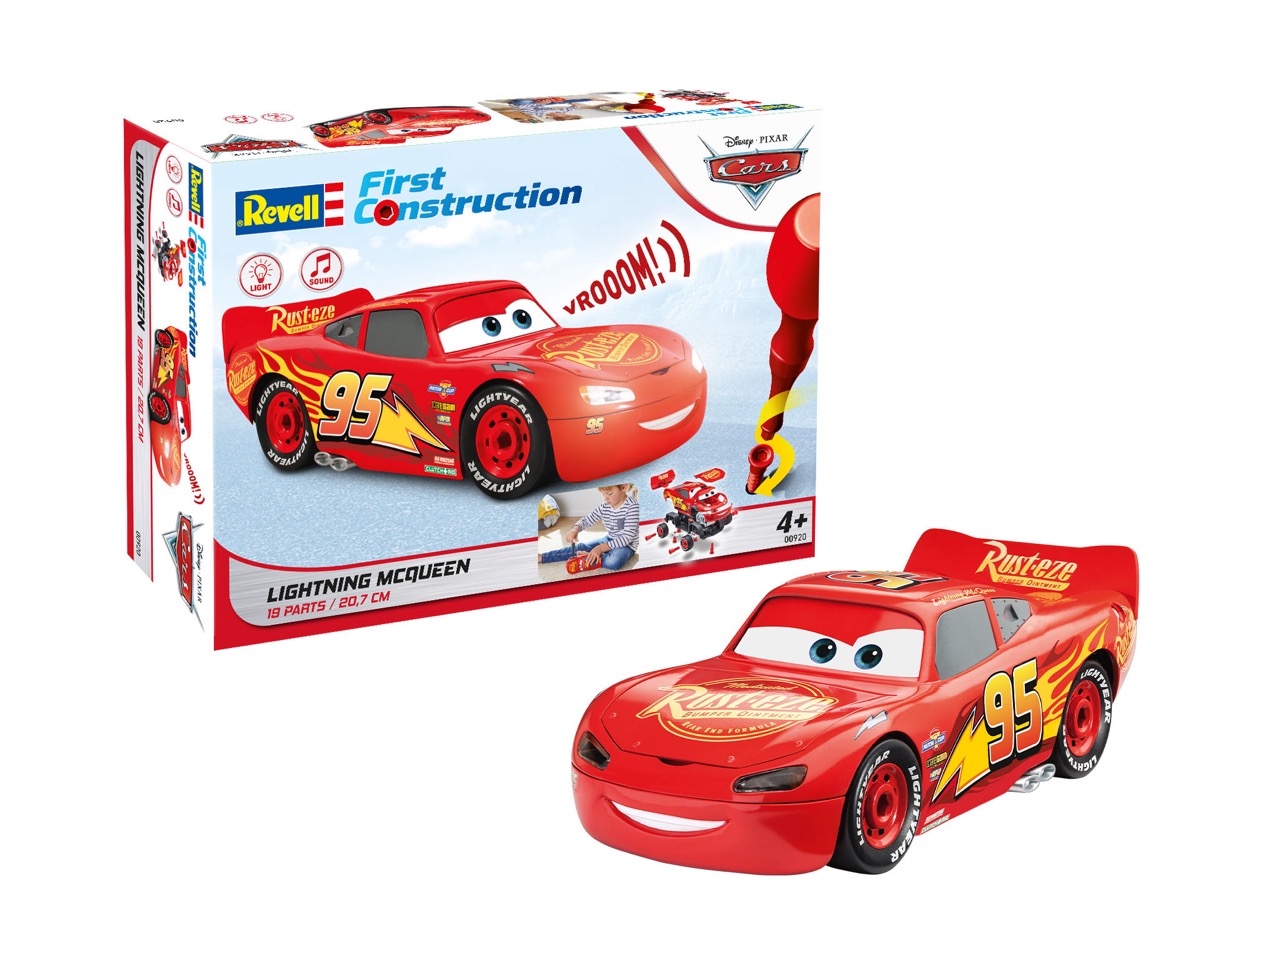 Revell 00920 Lightning Mcqueen Disney Cars Kids Model Kit Construction Toy